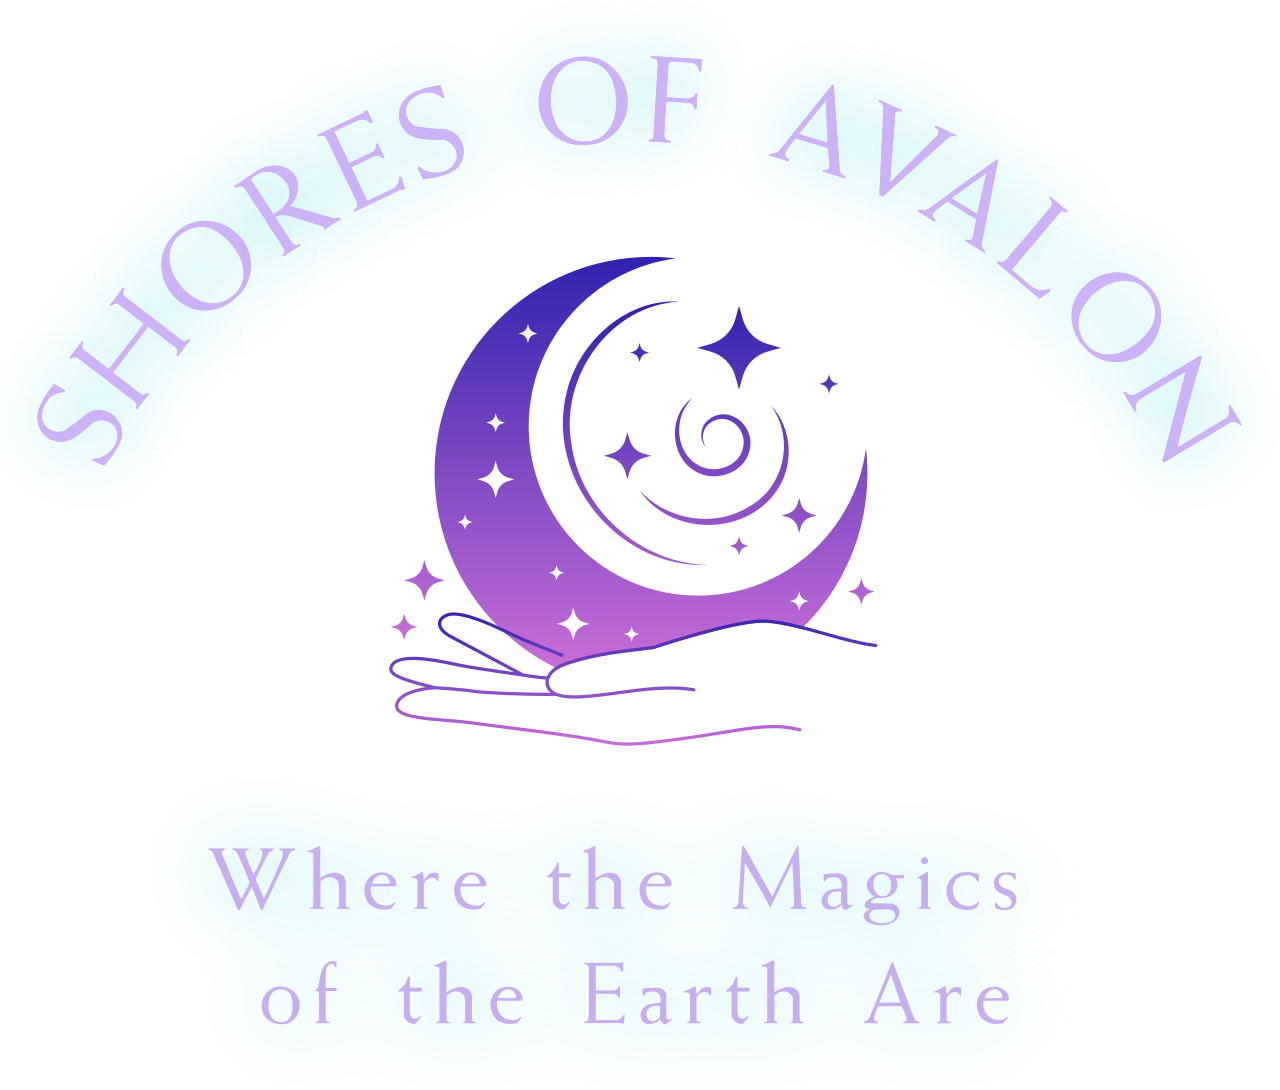 SHORES OF AVALON's logo